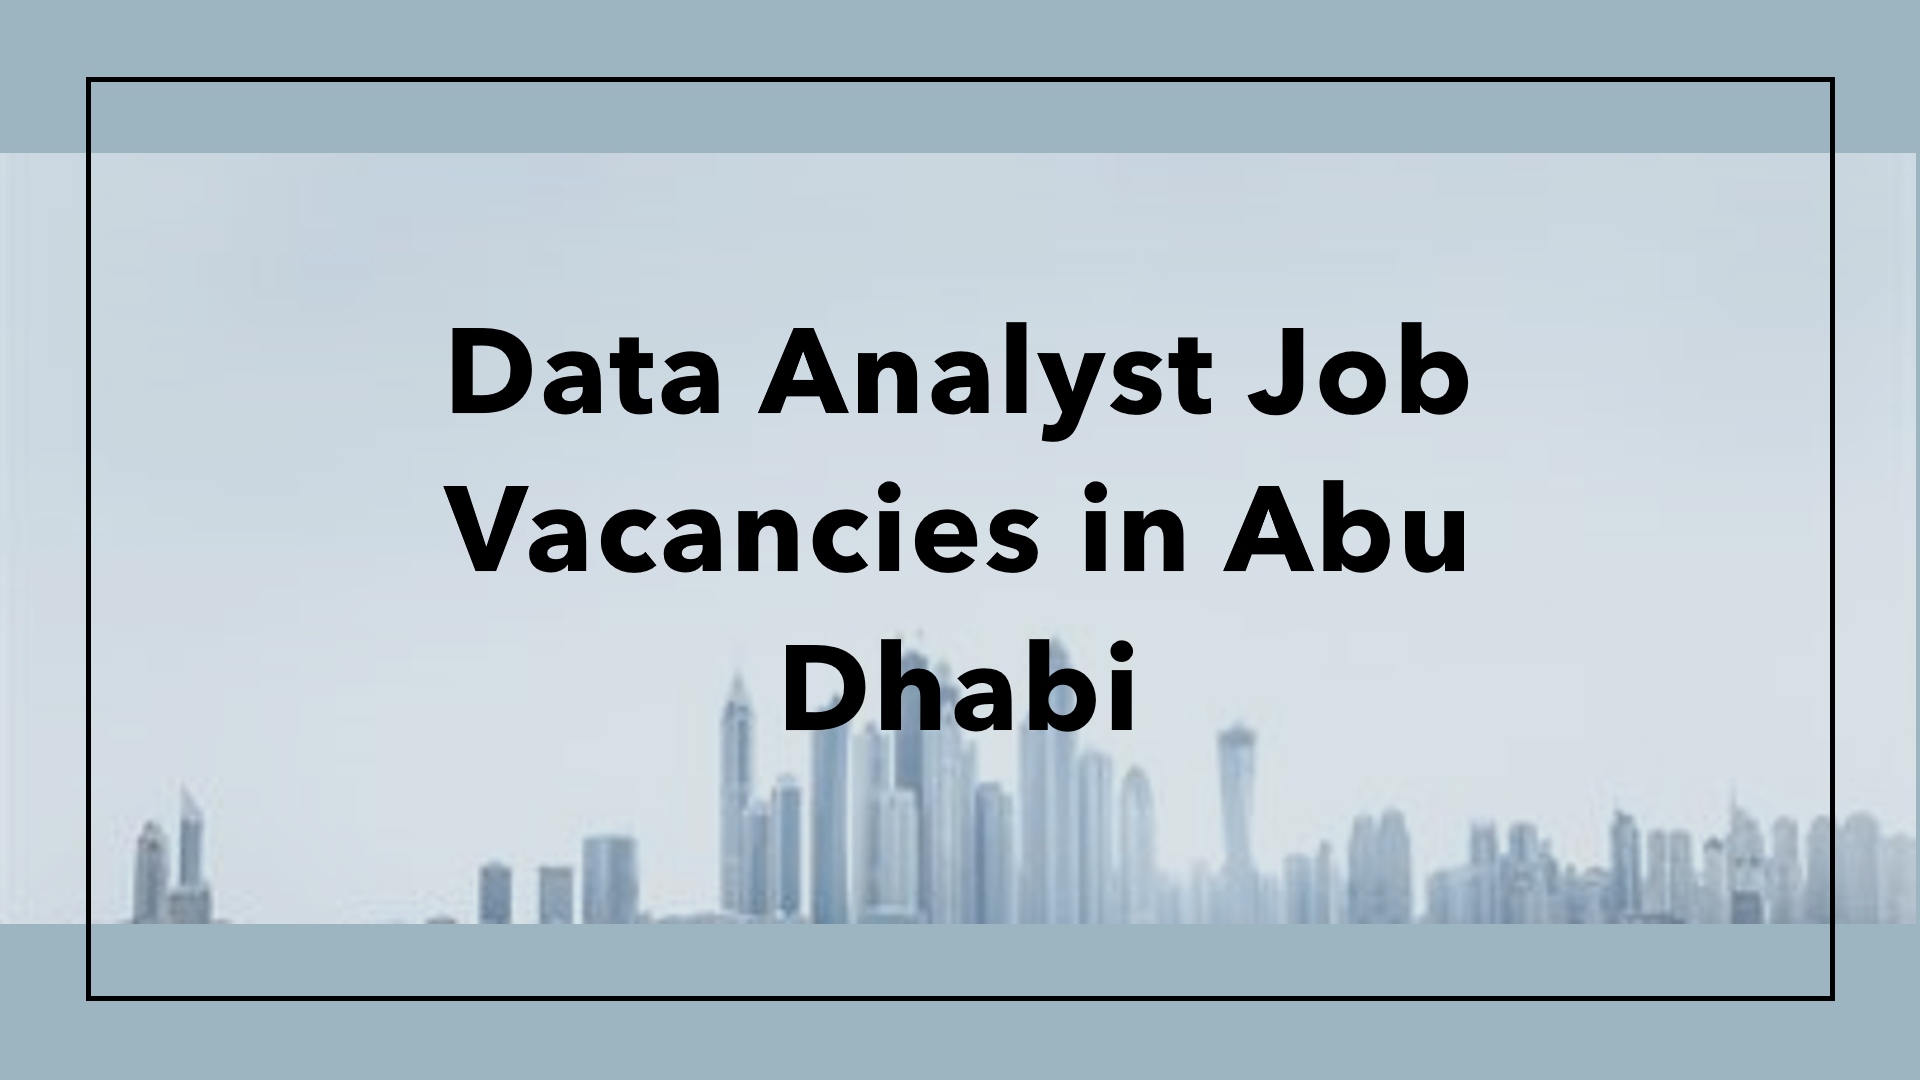 Data Analyst job vacancies in Abu Dhabi